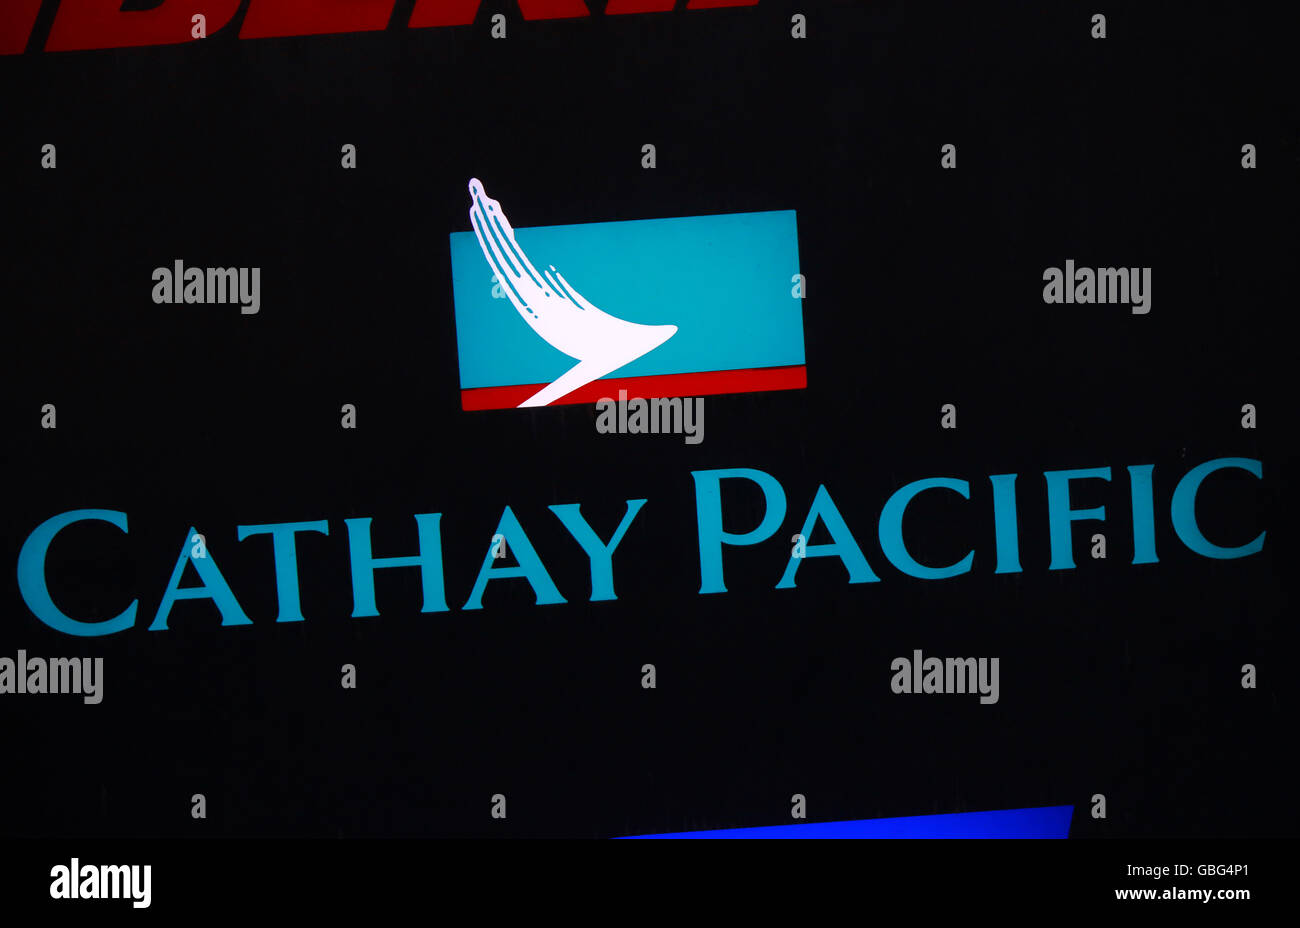 das Logo der Marke 'Cathay Pacific', Swinemuende, Polen. Stock Photo